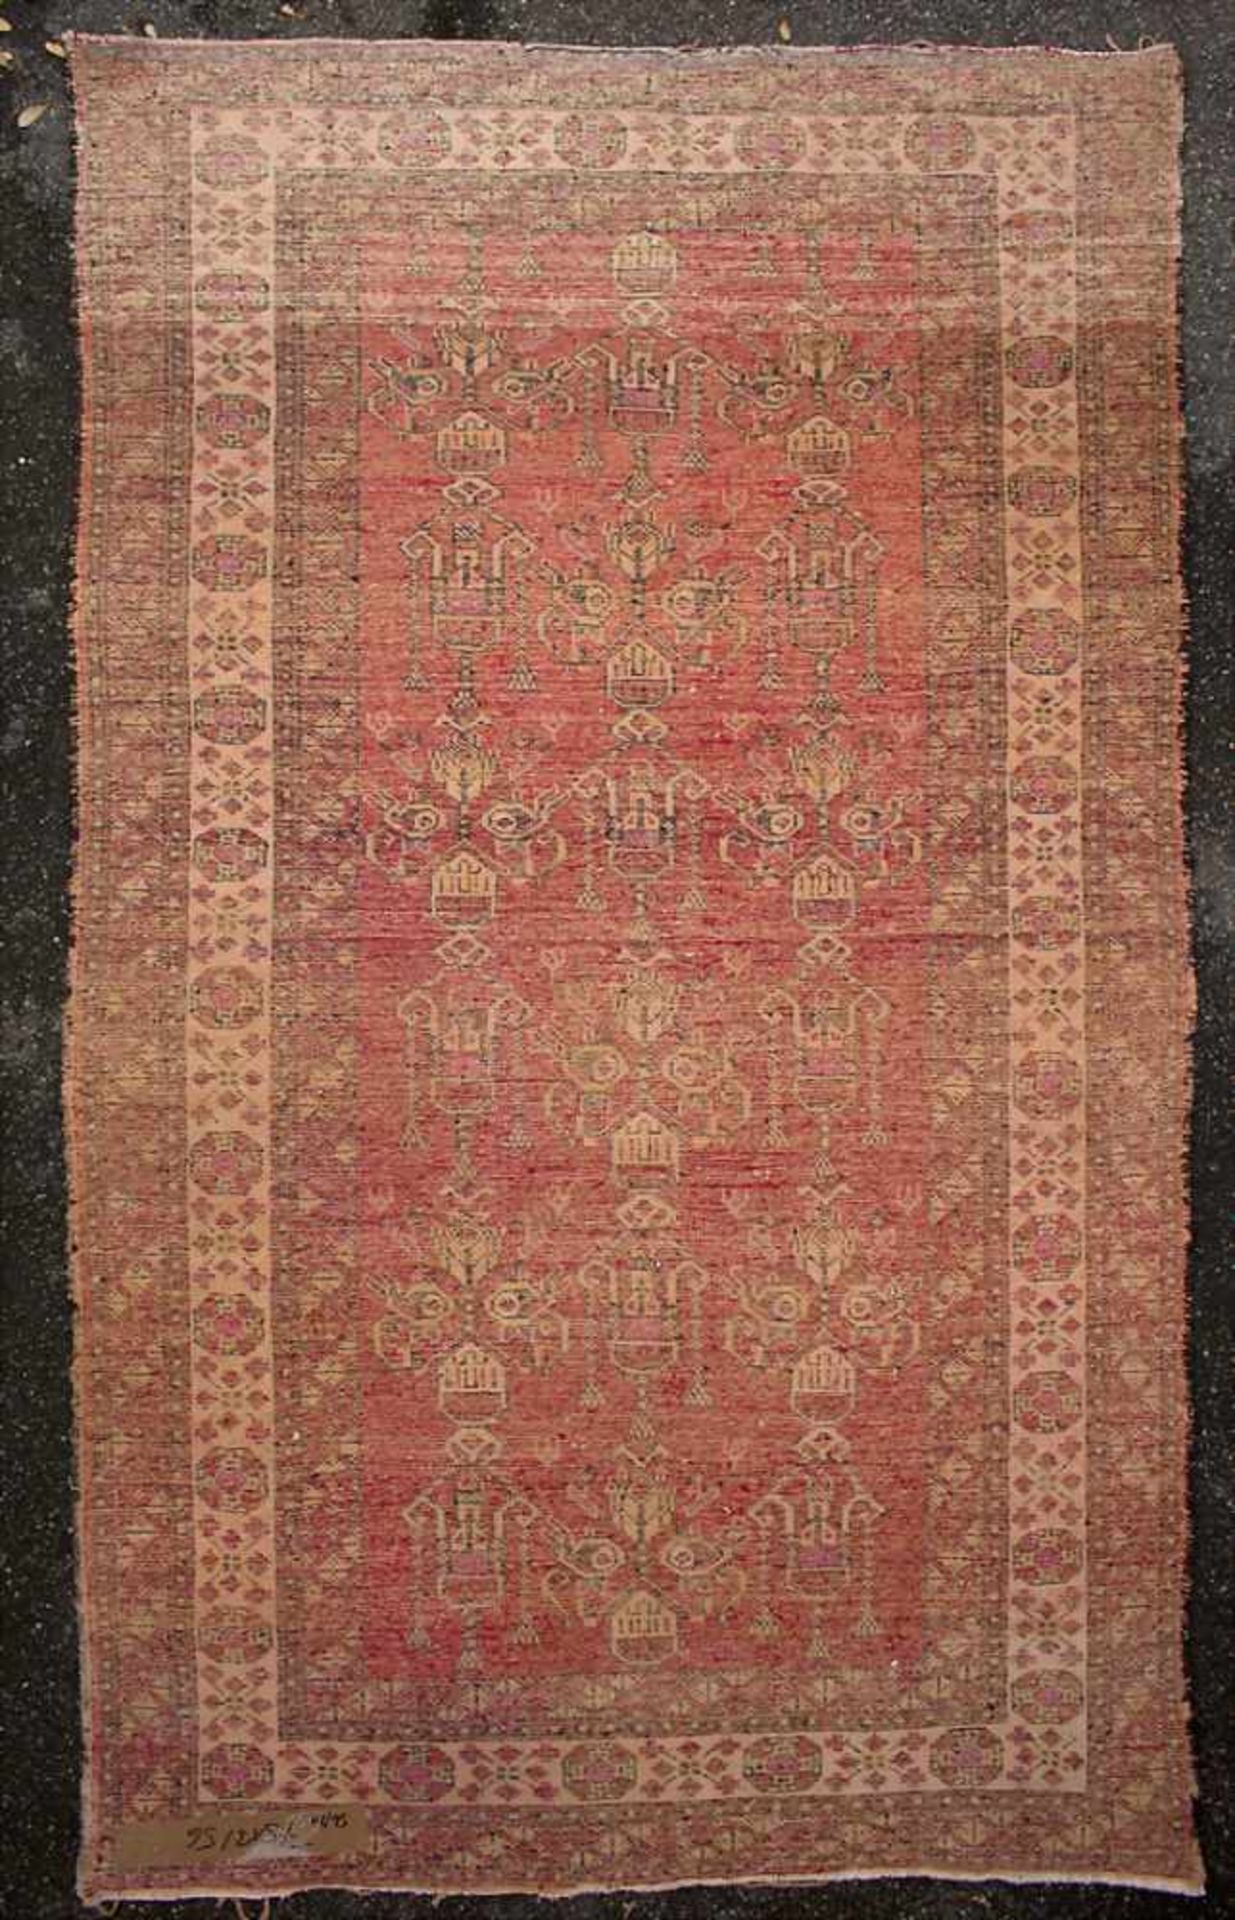 Orientteppich / An oriental carpetMaterial: Wolle auf Baumwolle, Maße: 208 x 122 cm, Zustand: - Image 3 of 5